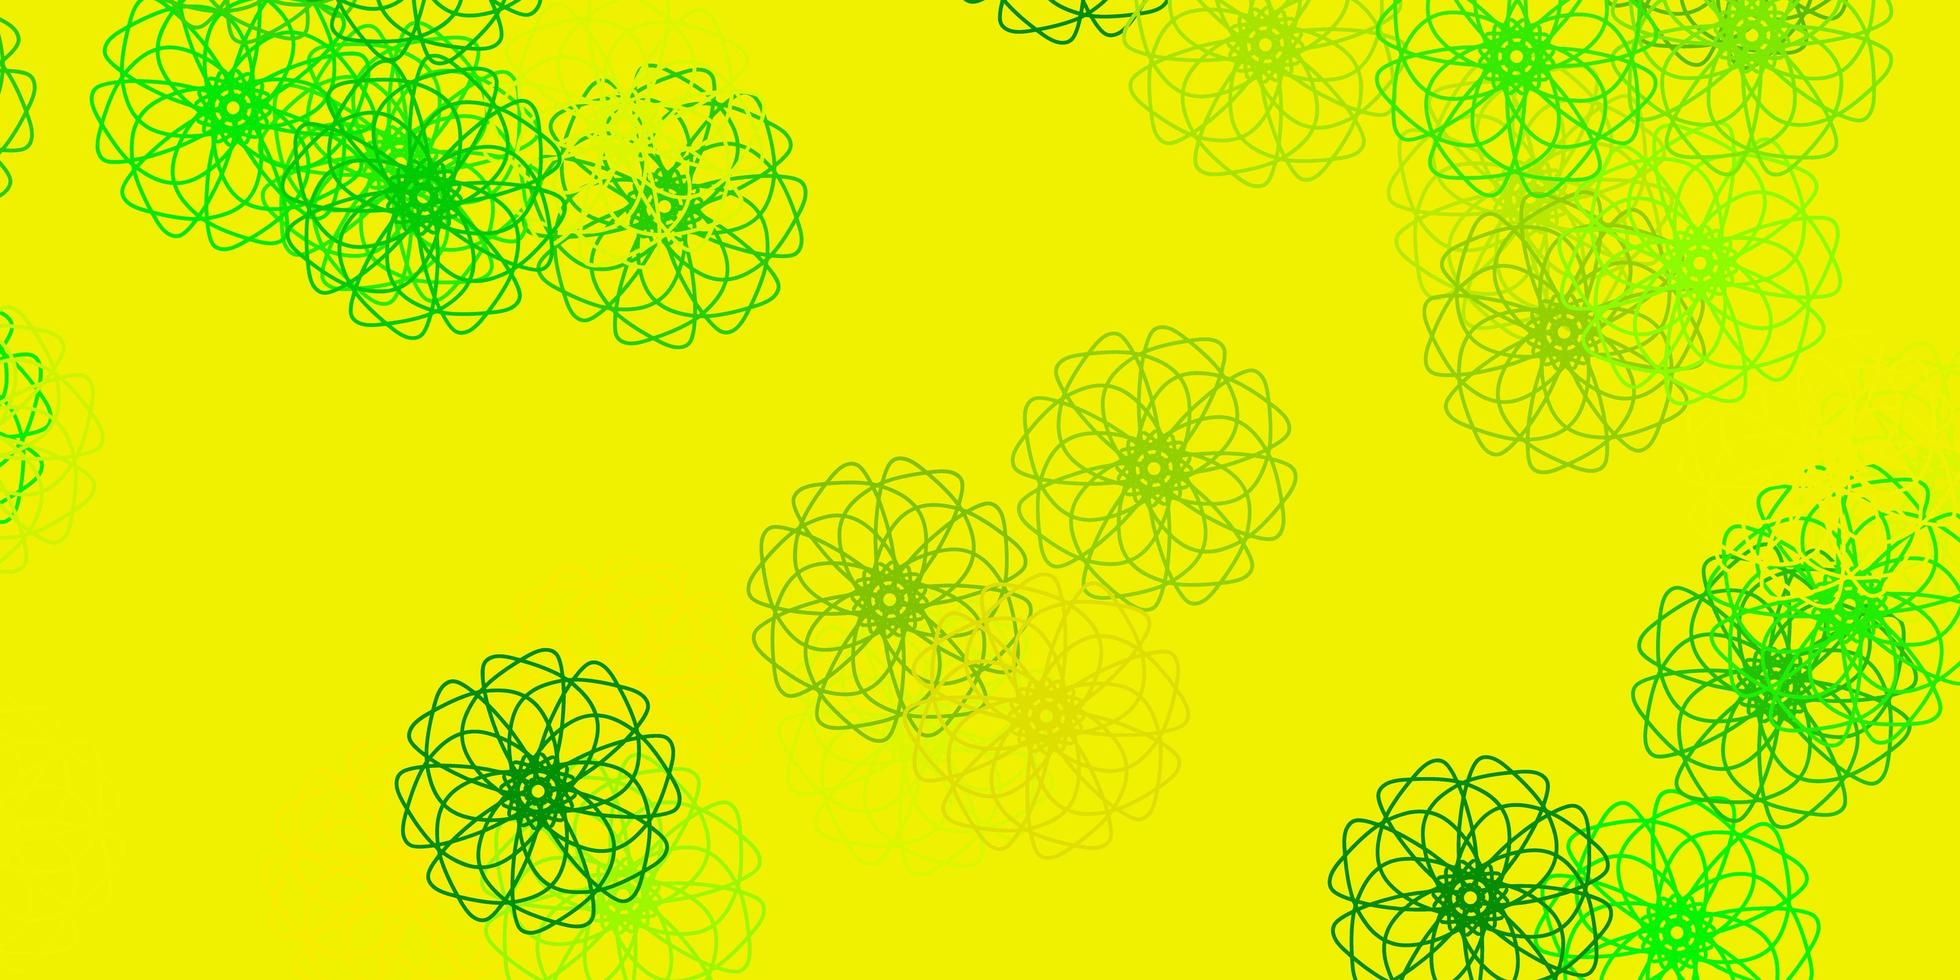 modelo de doodle de vetor verde e amarelo claro com flores.